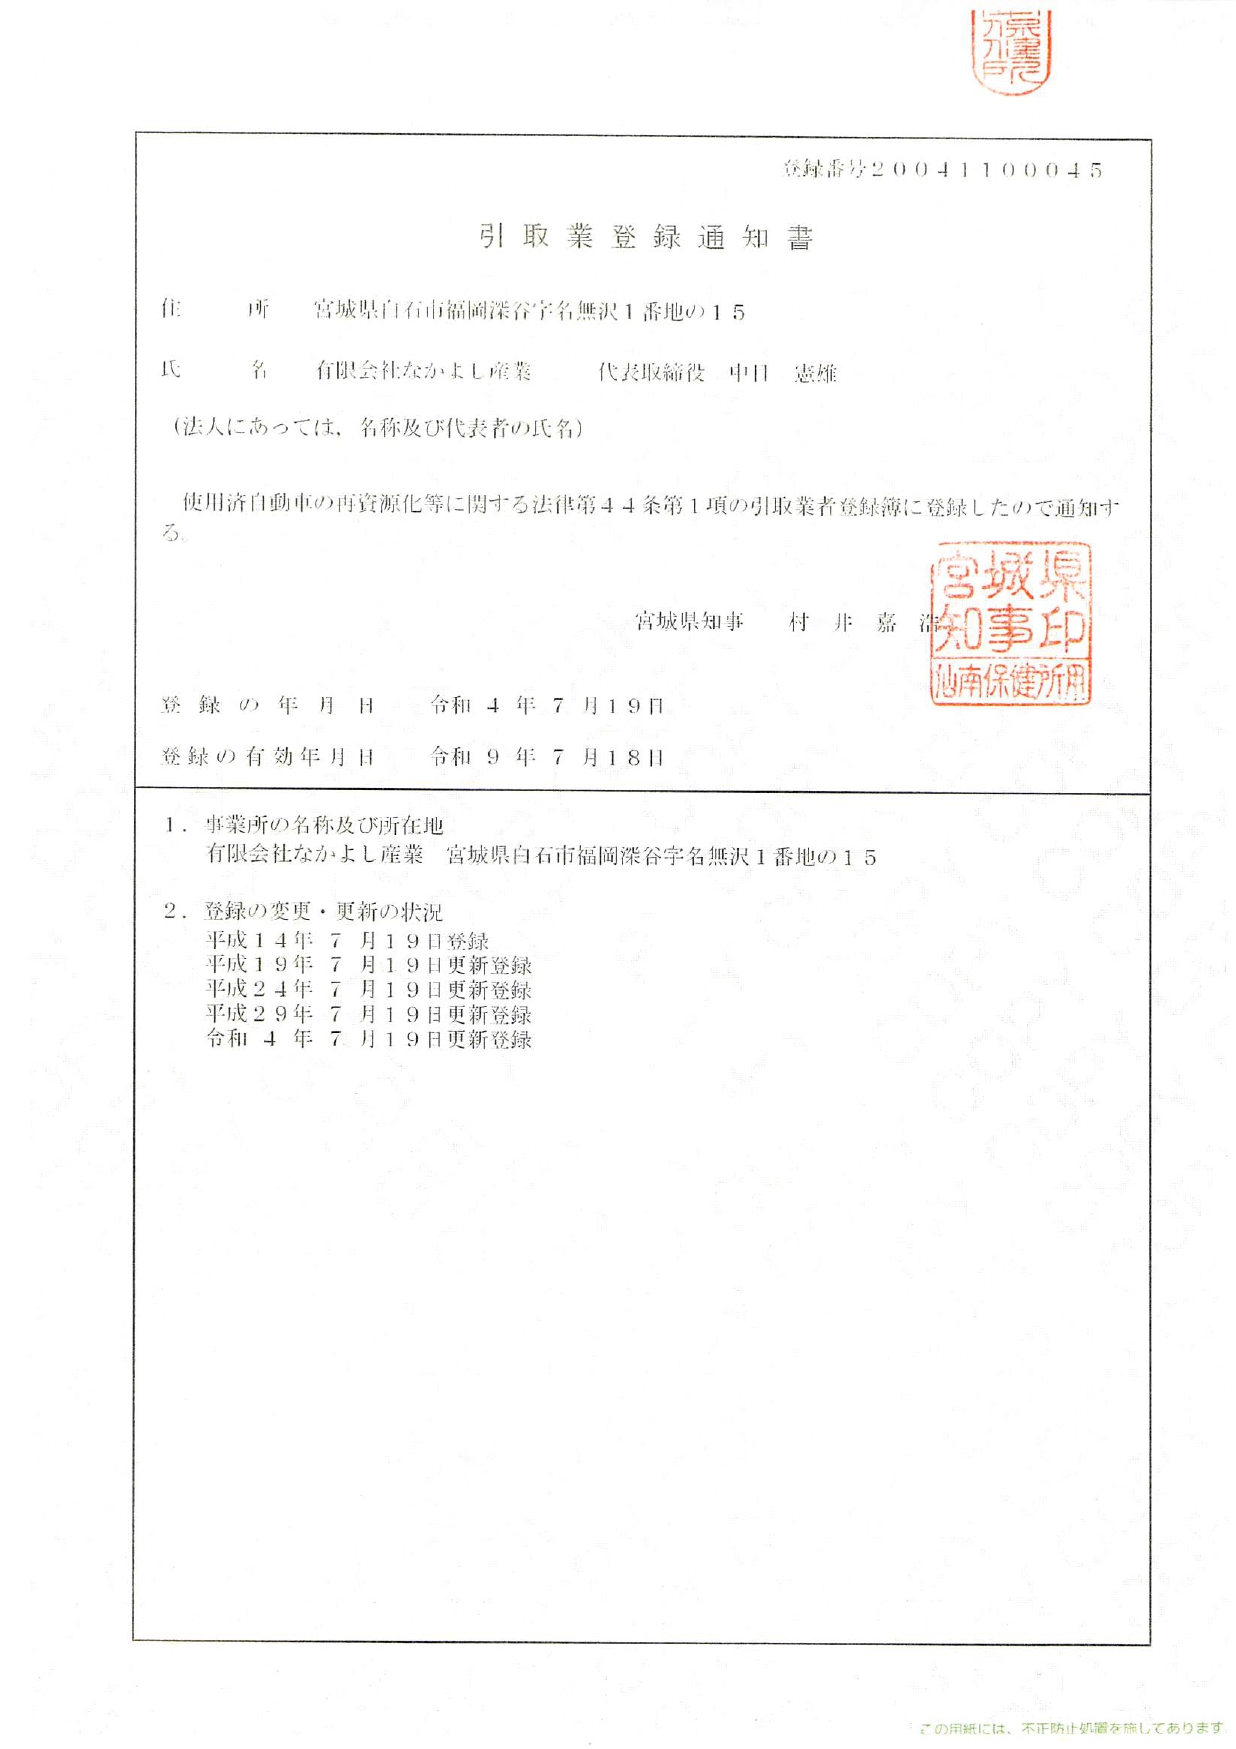 引取業登録通知書_page-0001 (1)